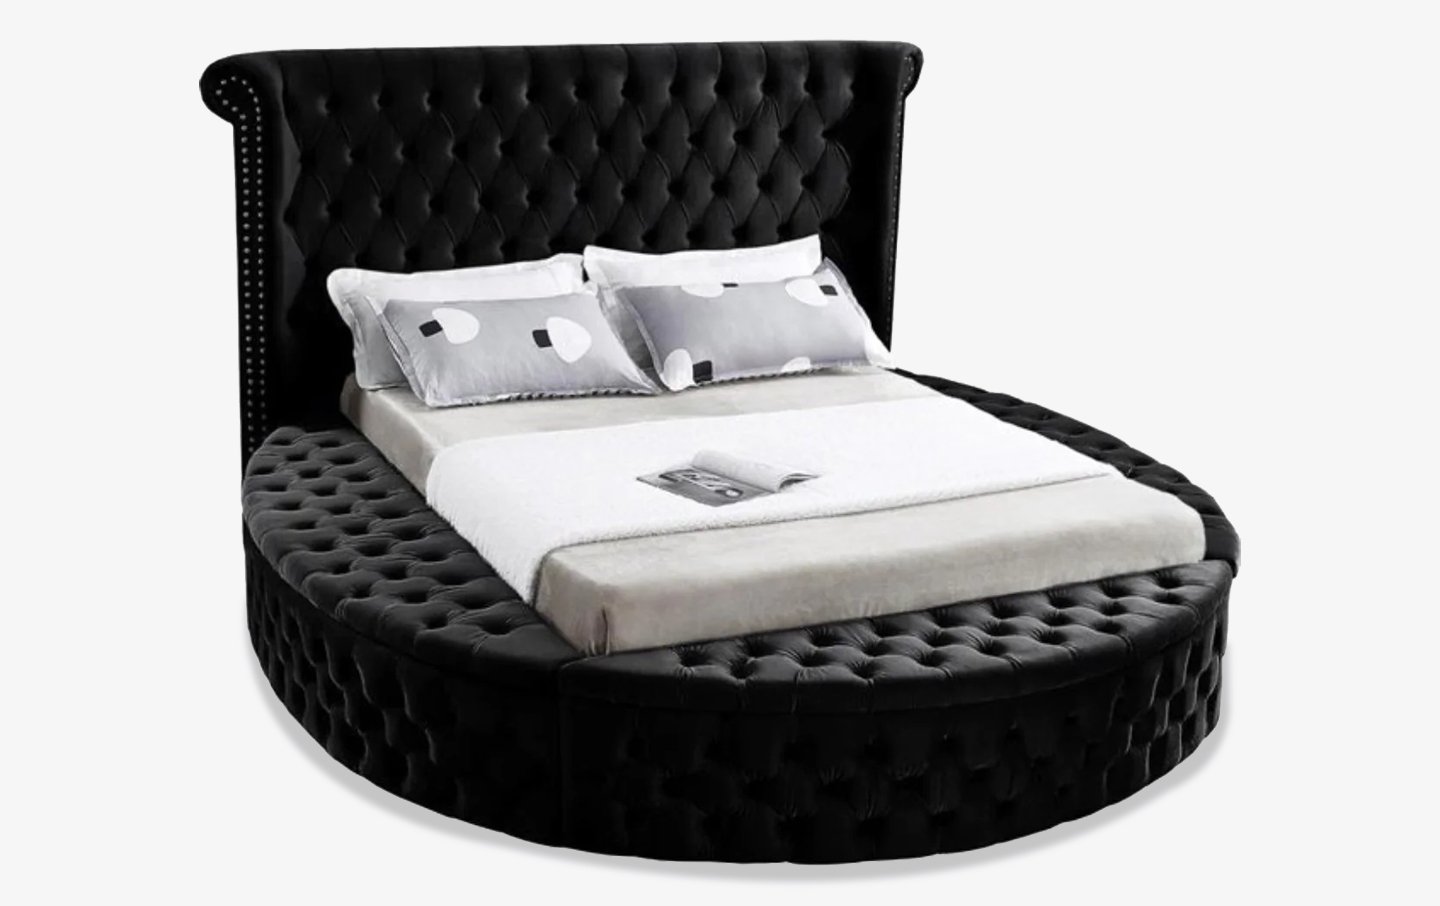 Luxus Black Round Bed